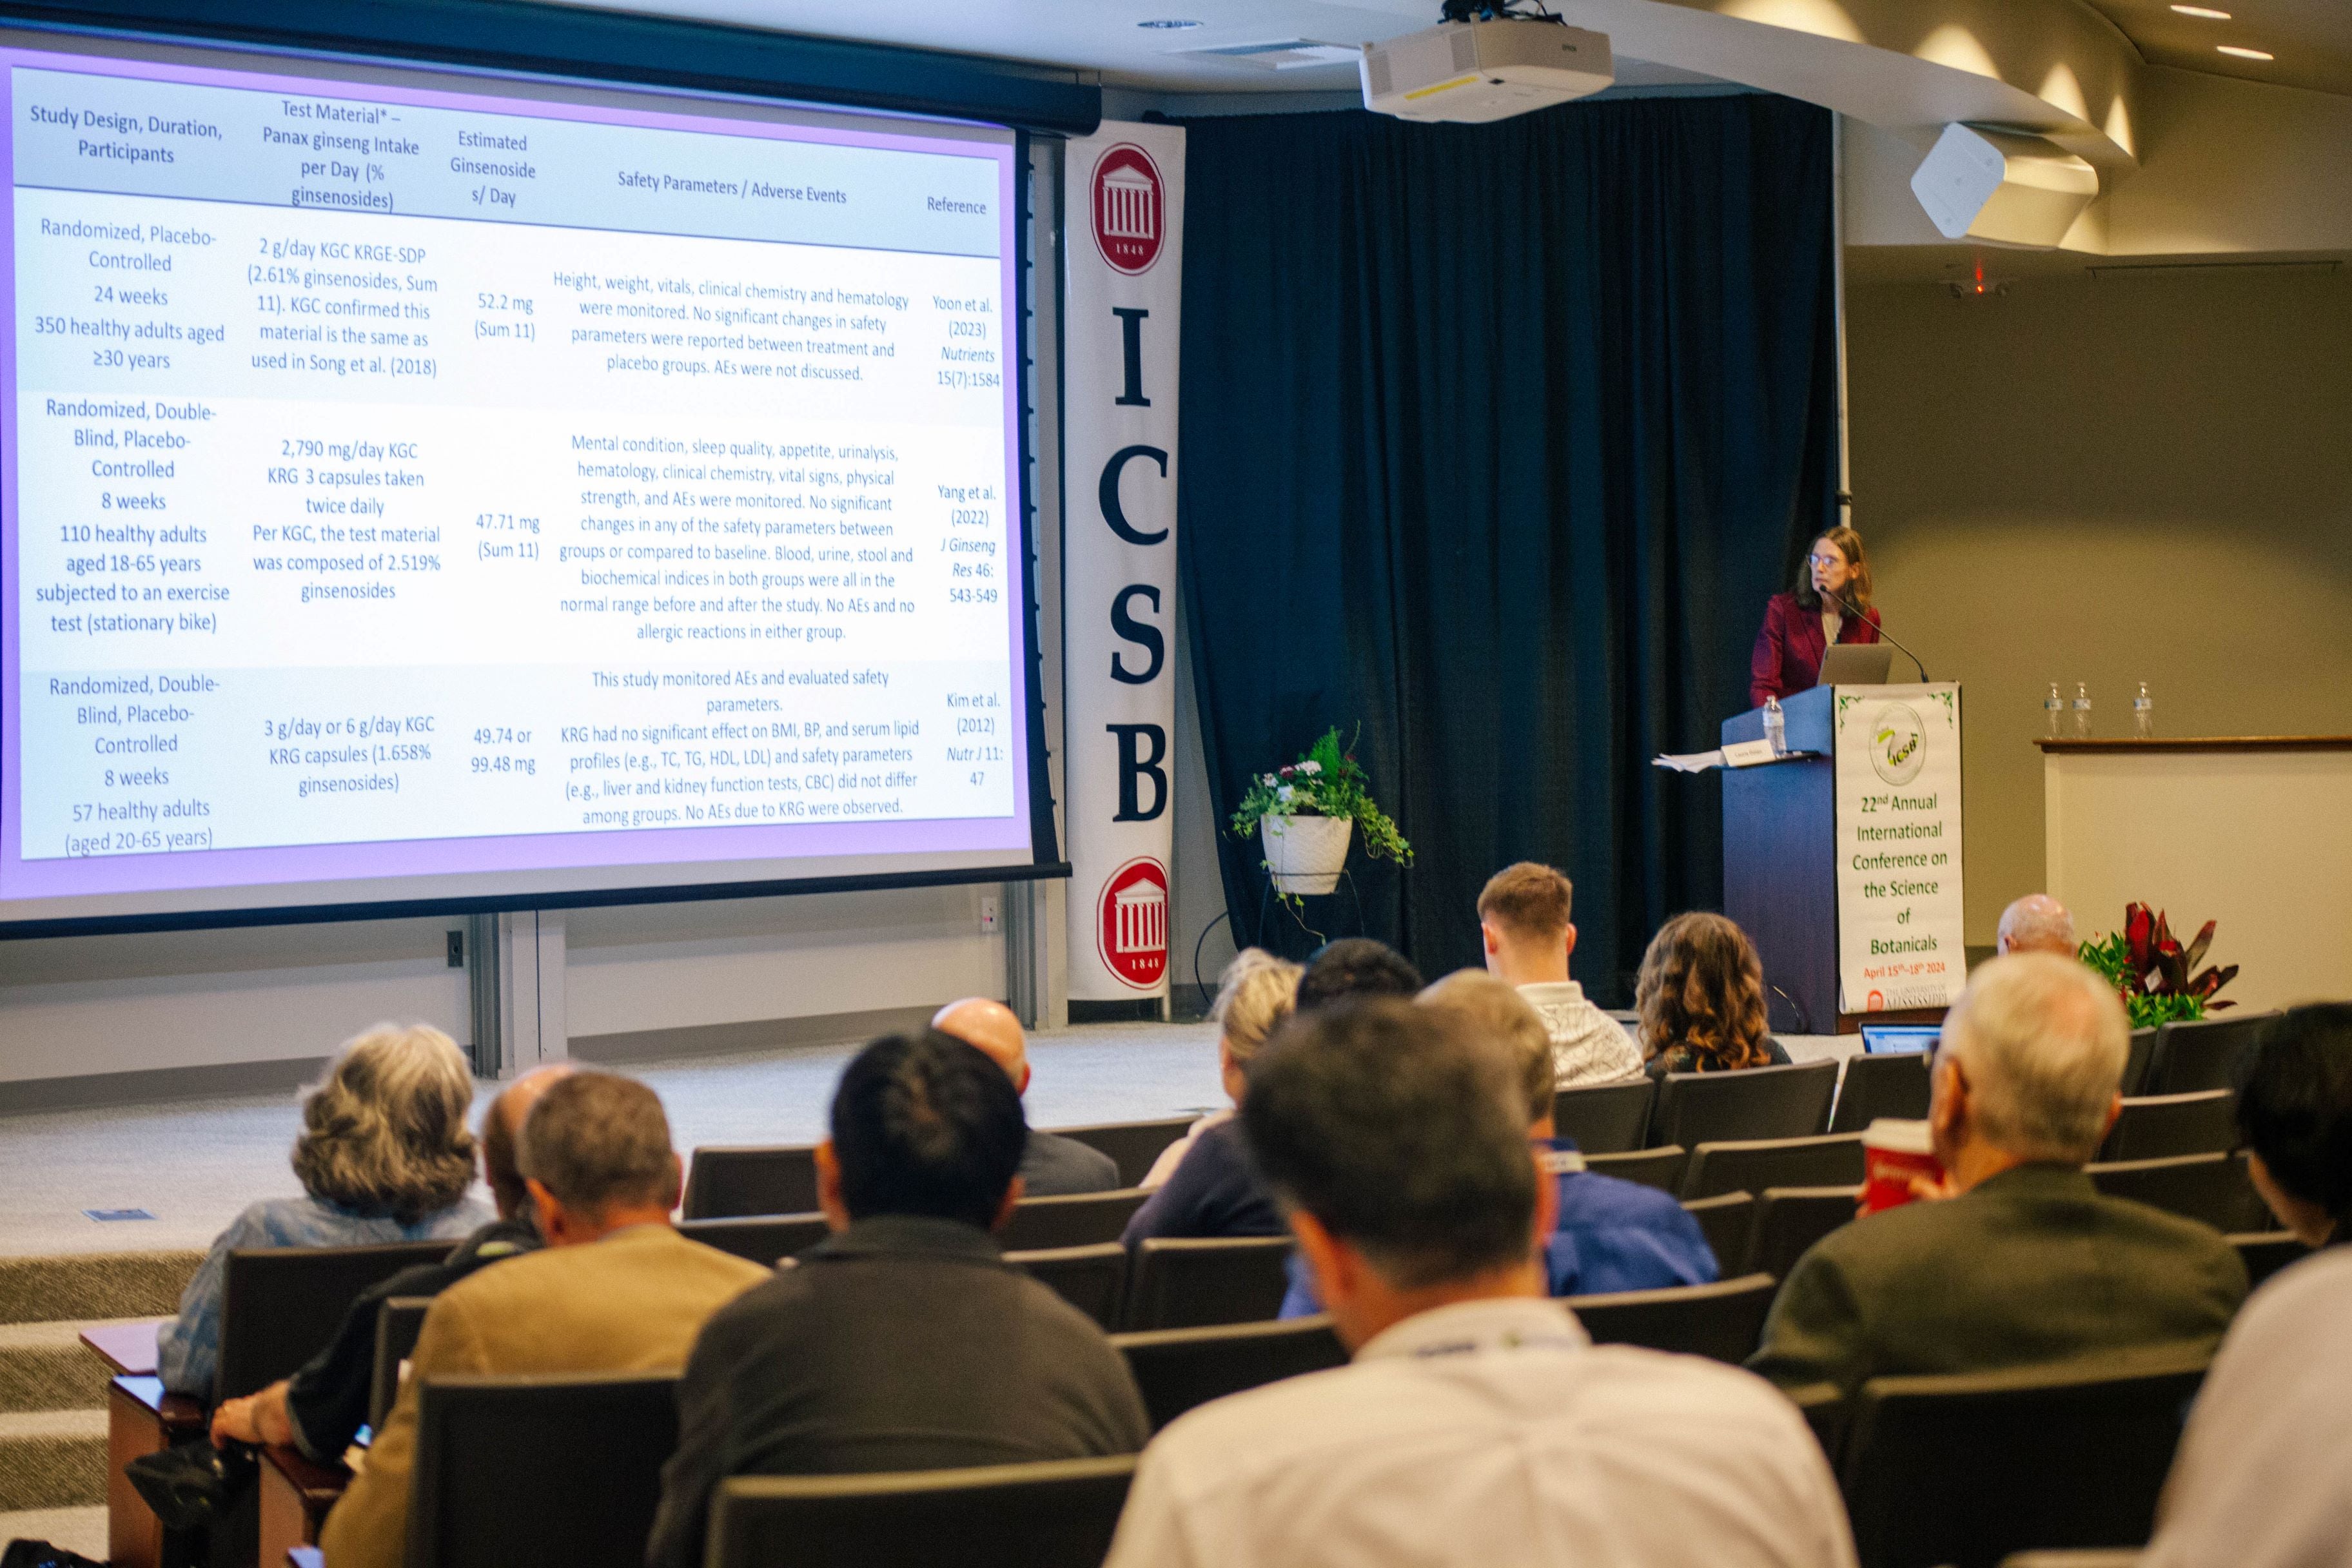 कोरिया जिनसेंग कॉर्पोरेशन ने संयुक्त राज्य अमेरिका में कोरियाई रेड जिनसेंग के बारे में वनस्पति विज्ञान के अंतर्राष्ट्रीय सम्मेलन (ICSB) में एक समर्पित अंतर्राष्ट्रीय संगोष्ठी आयोजित की